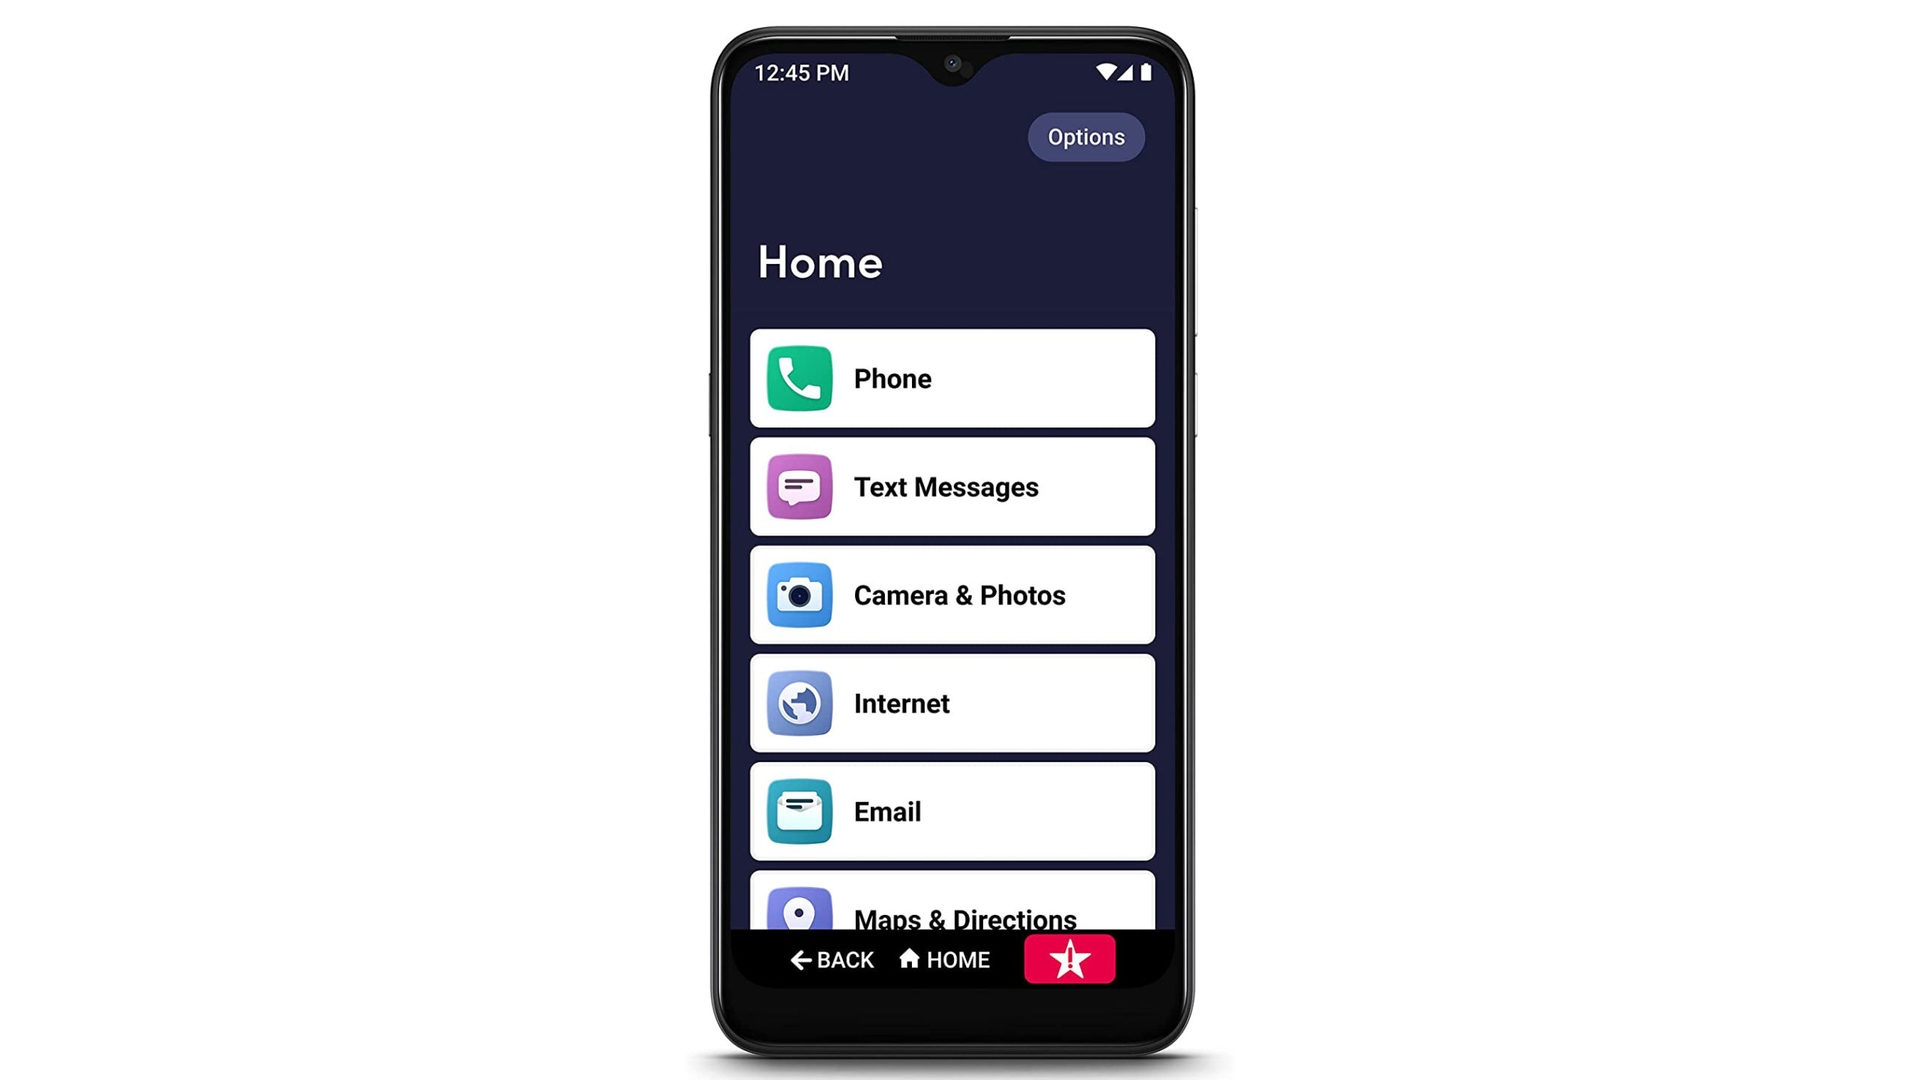 Jitterbug Smart 3 smartphone for seniors - The best phones for seniors